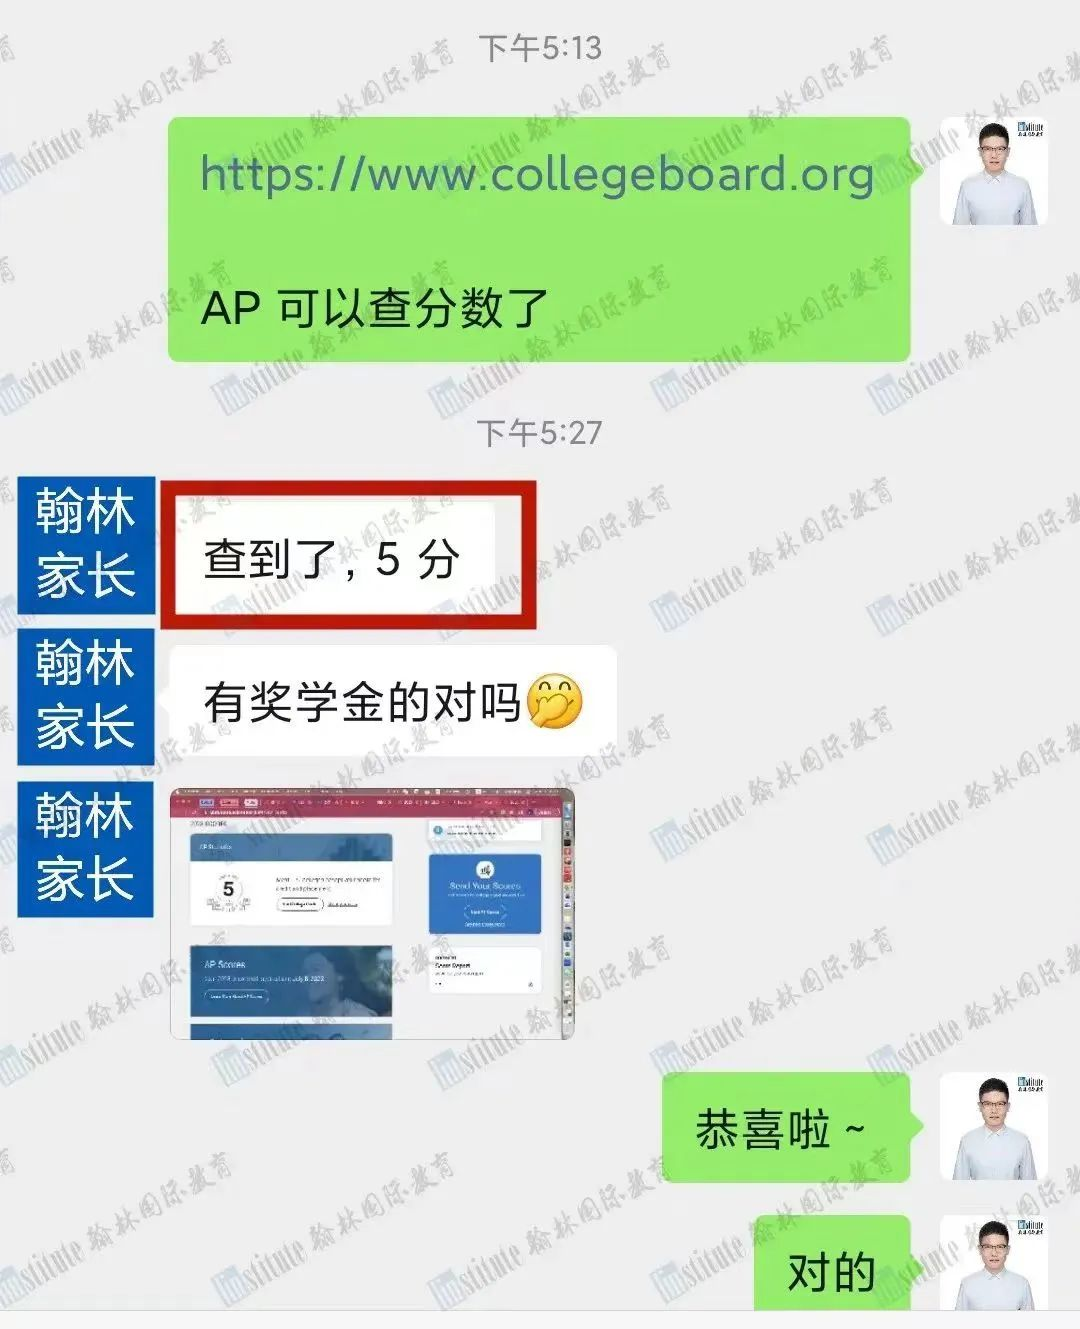 收藏！2024年中国香港AP考试准考证具体下载流程已出！附考点地址及考生须知